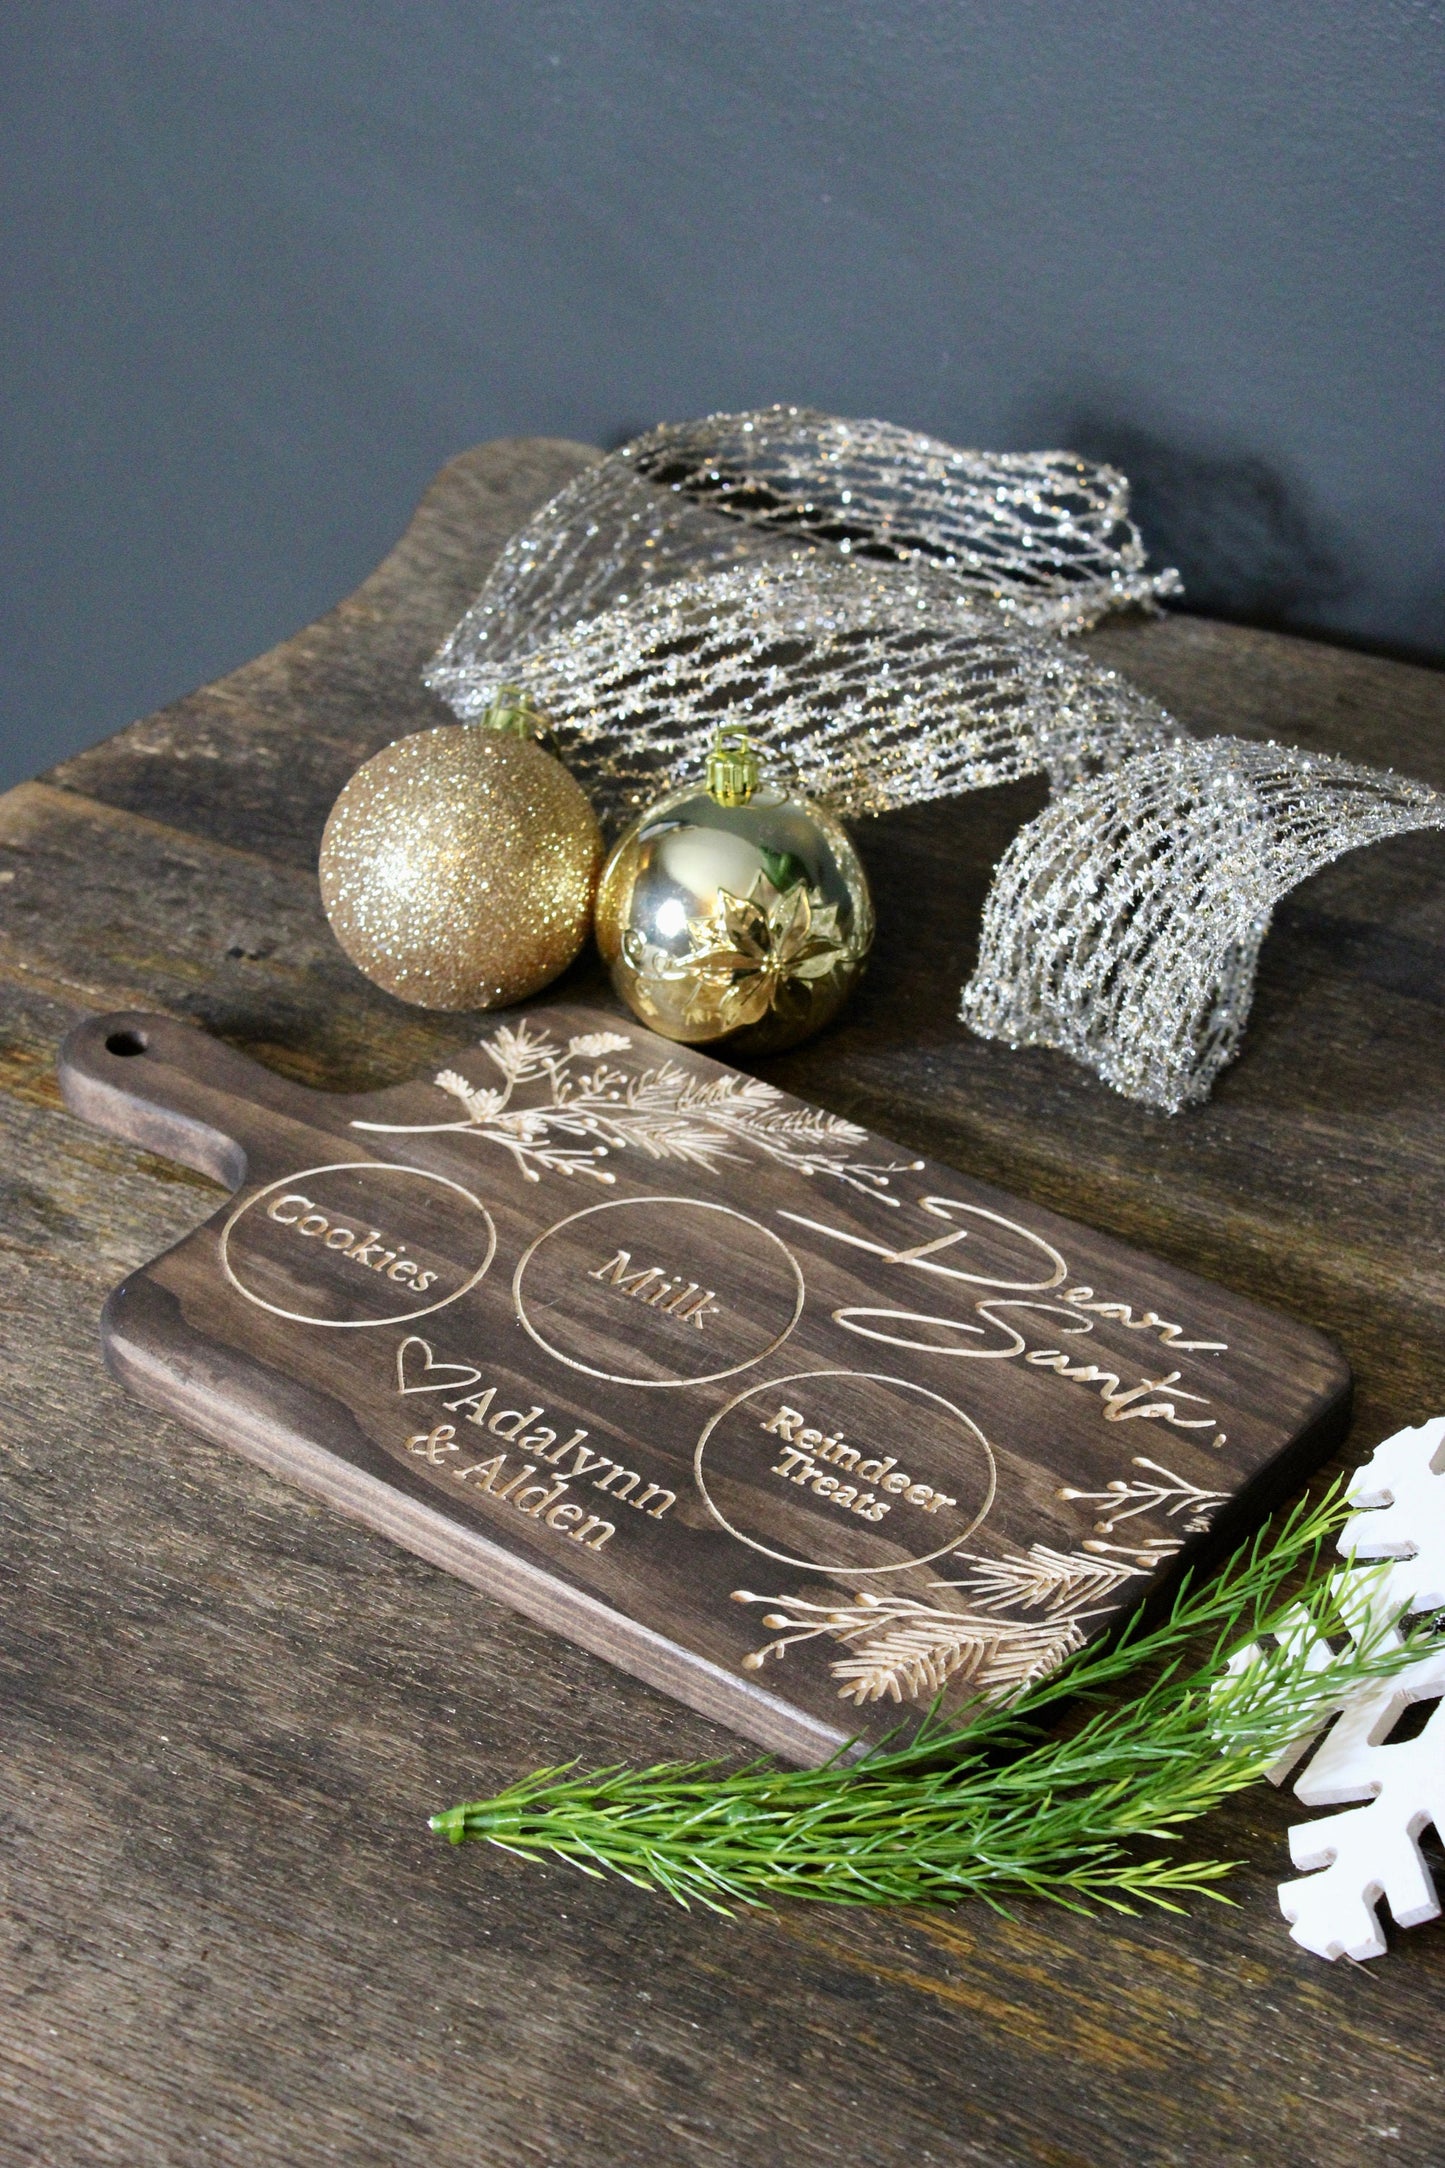 Santa Cookie Tray - Santa's Snack Tray - Custom Engraved Christmas Tray